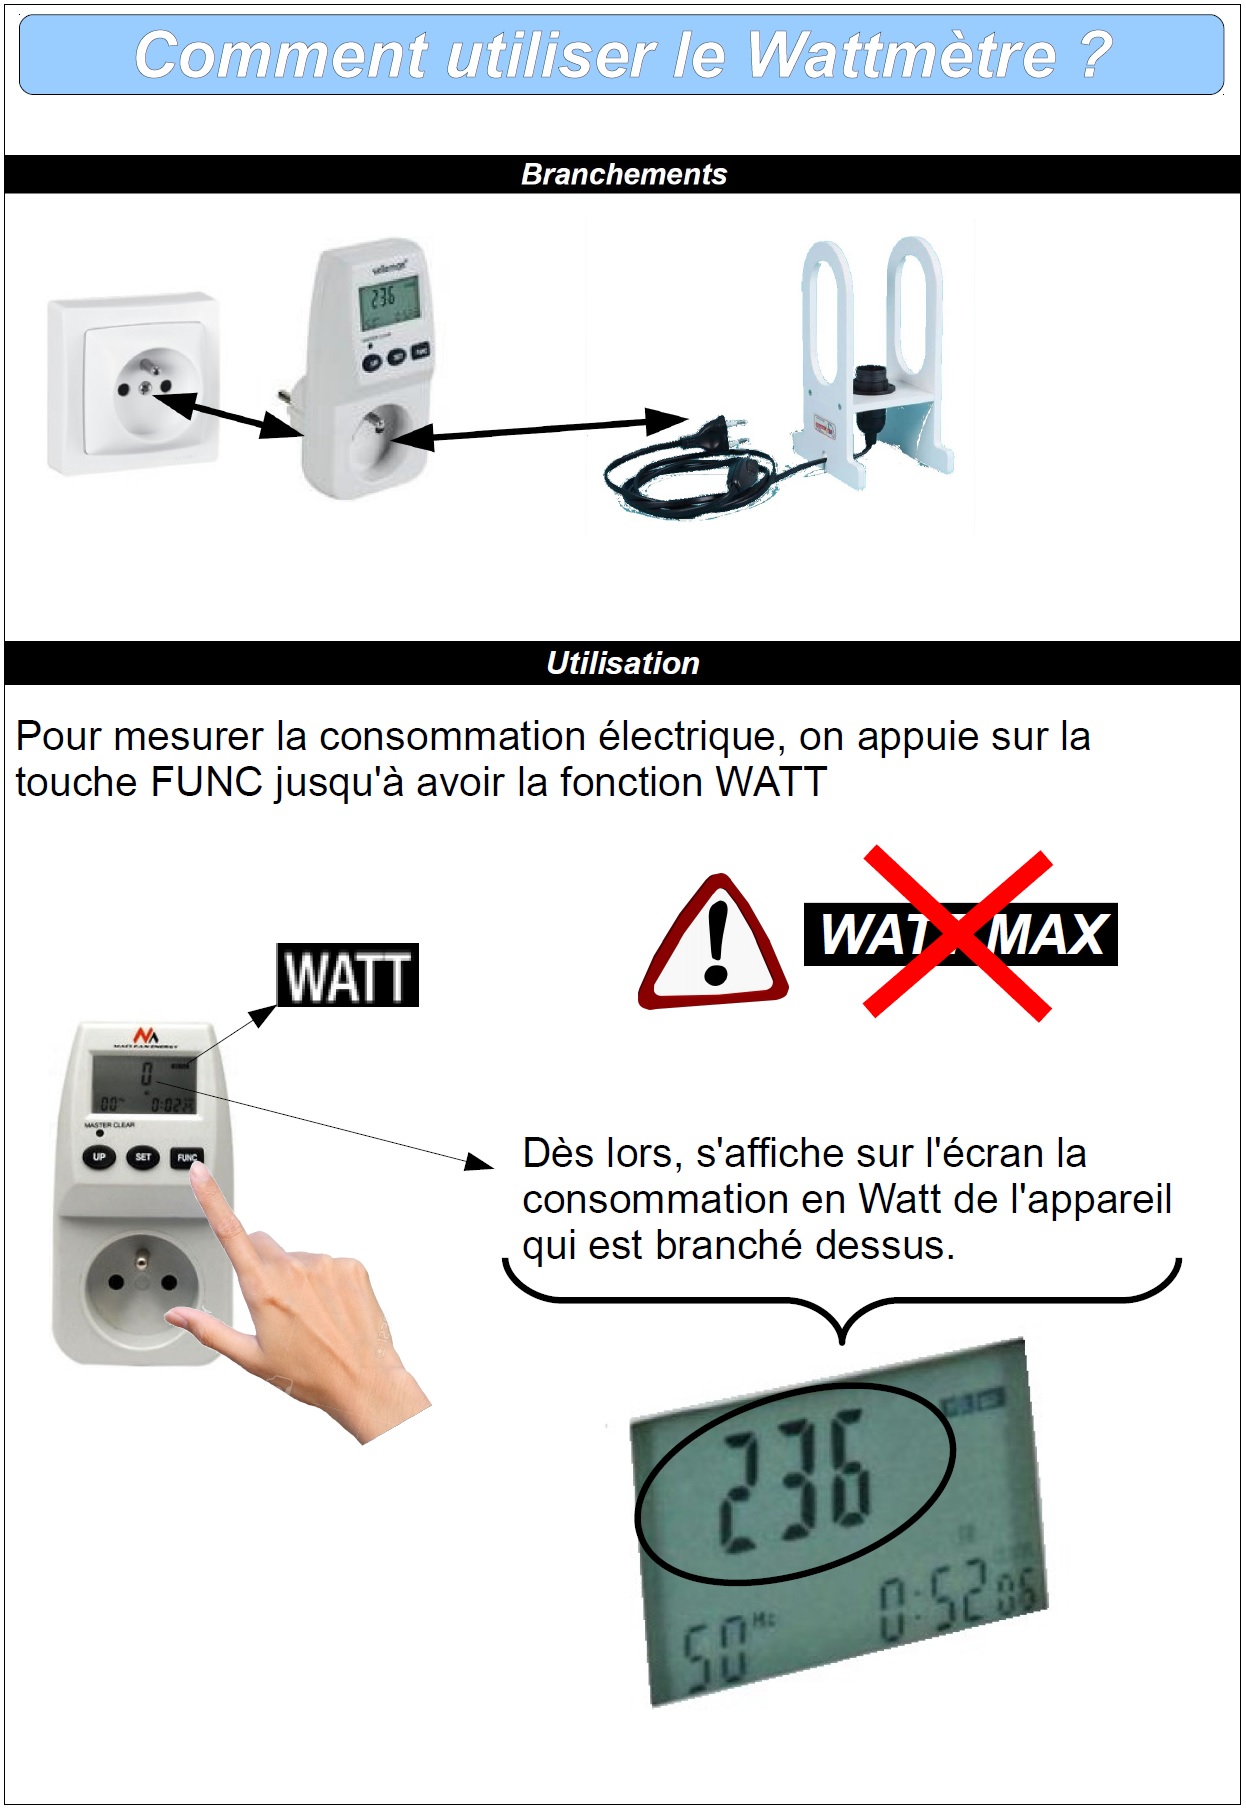 Comment utiliser un wattmètre ?